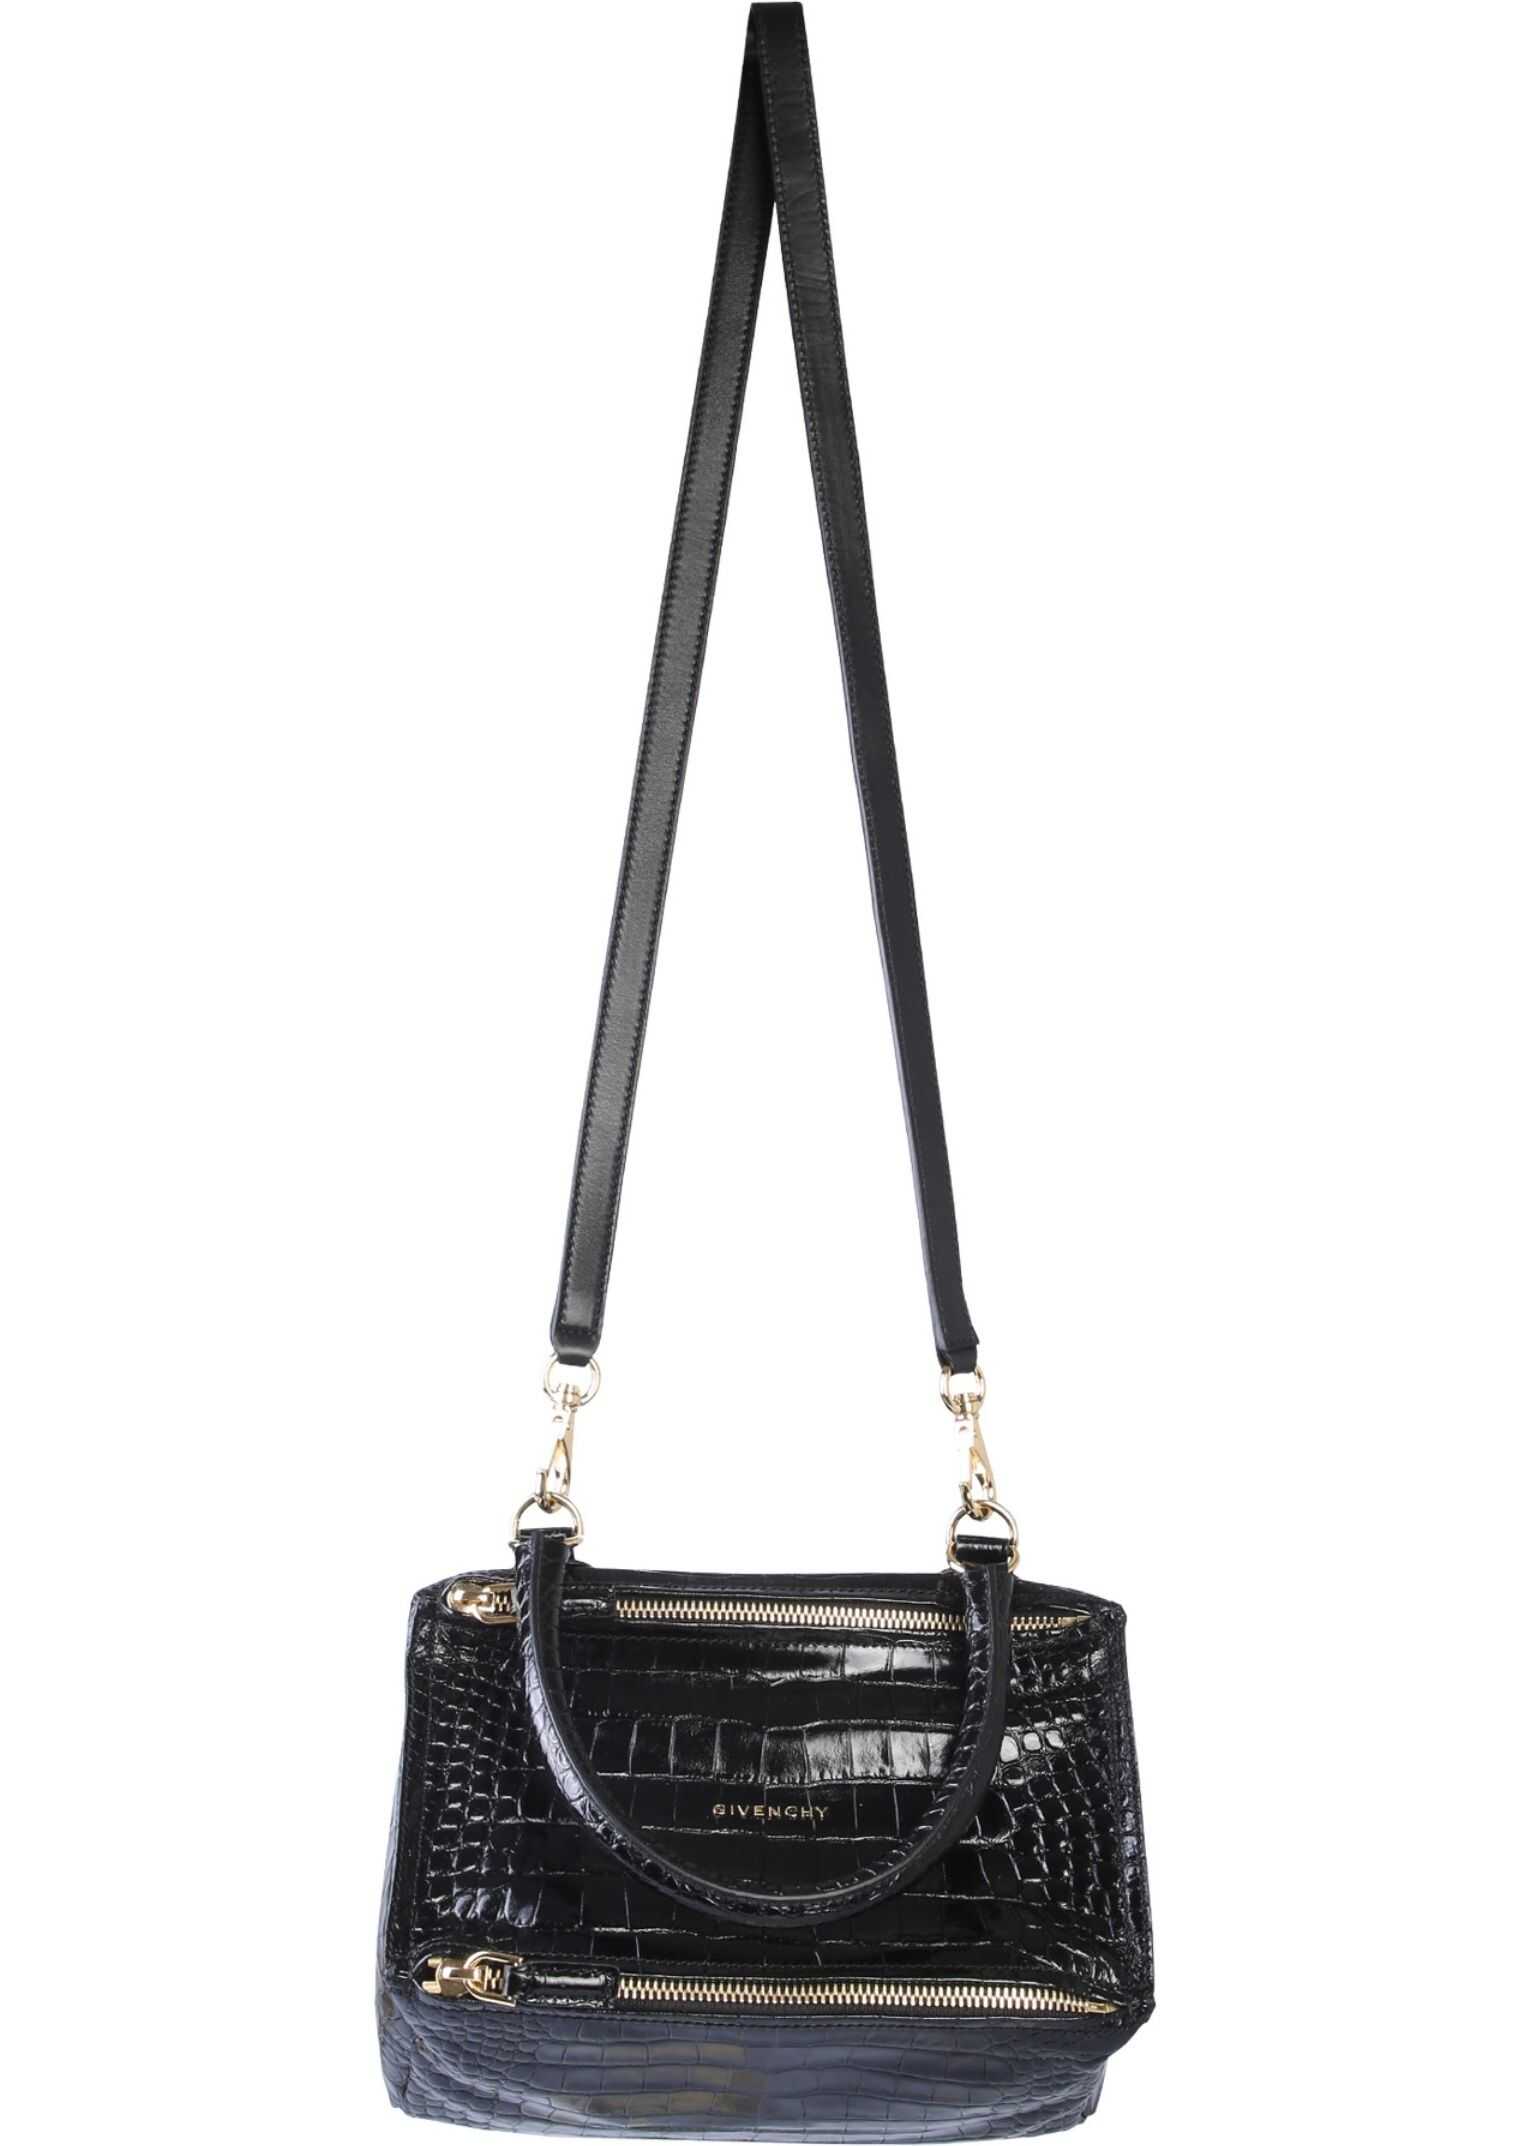 Givenchy Small Pandora Bag BLACK